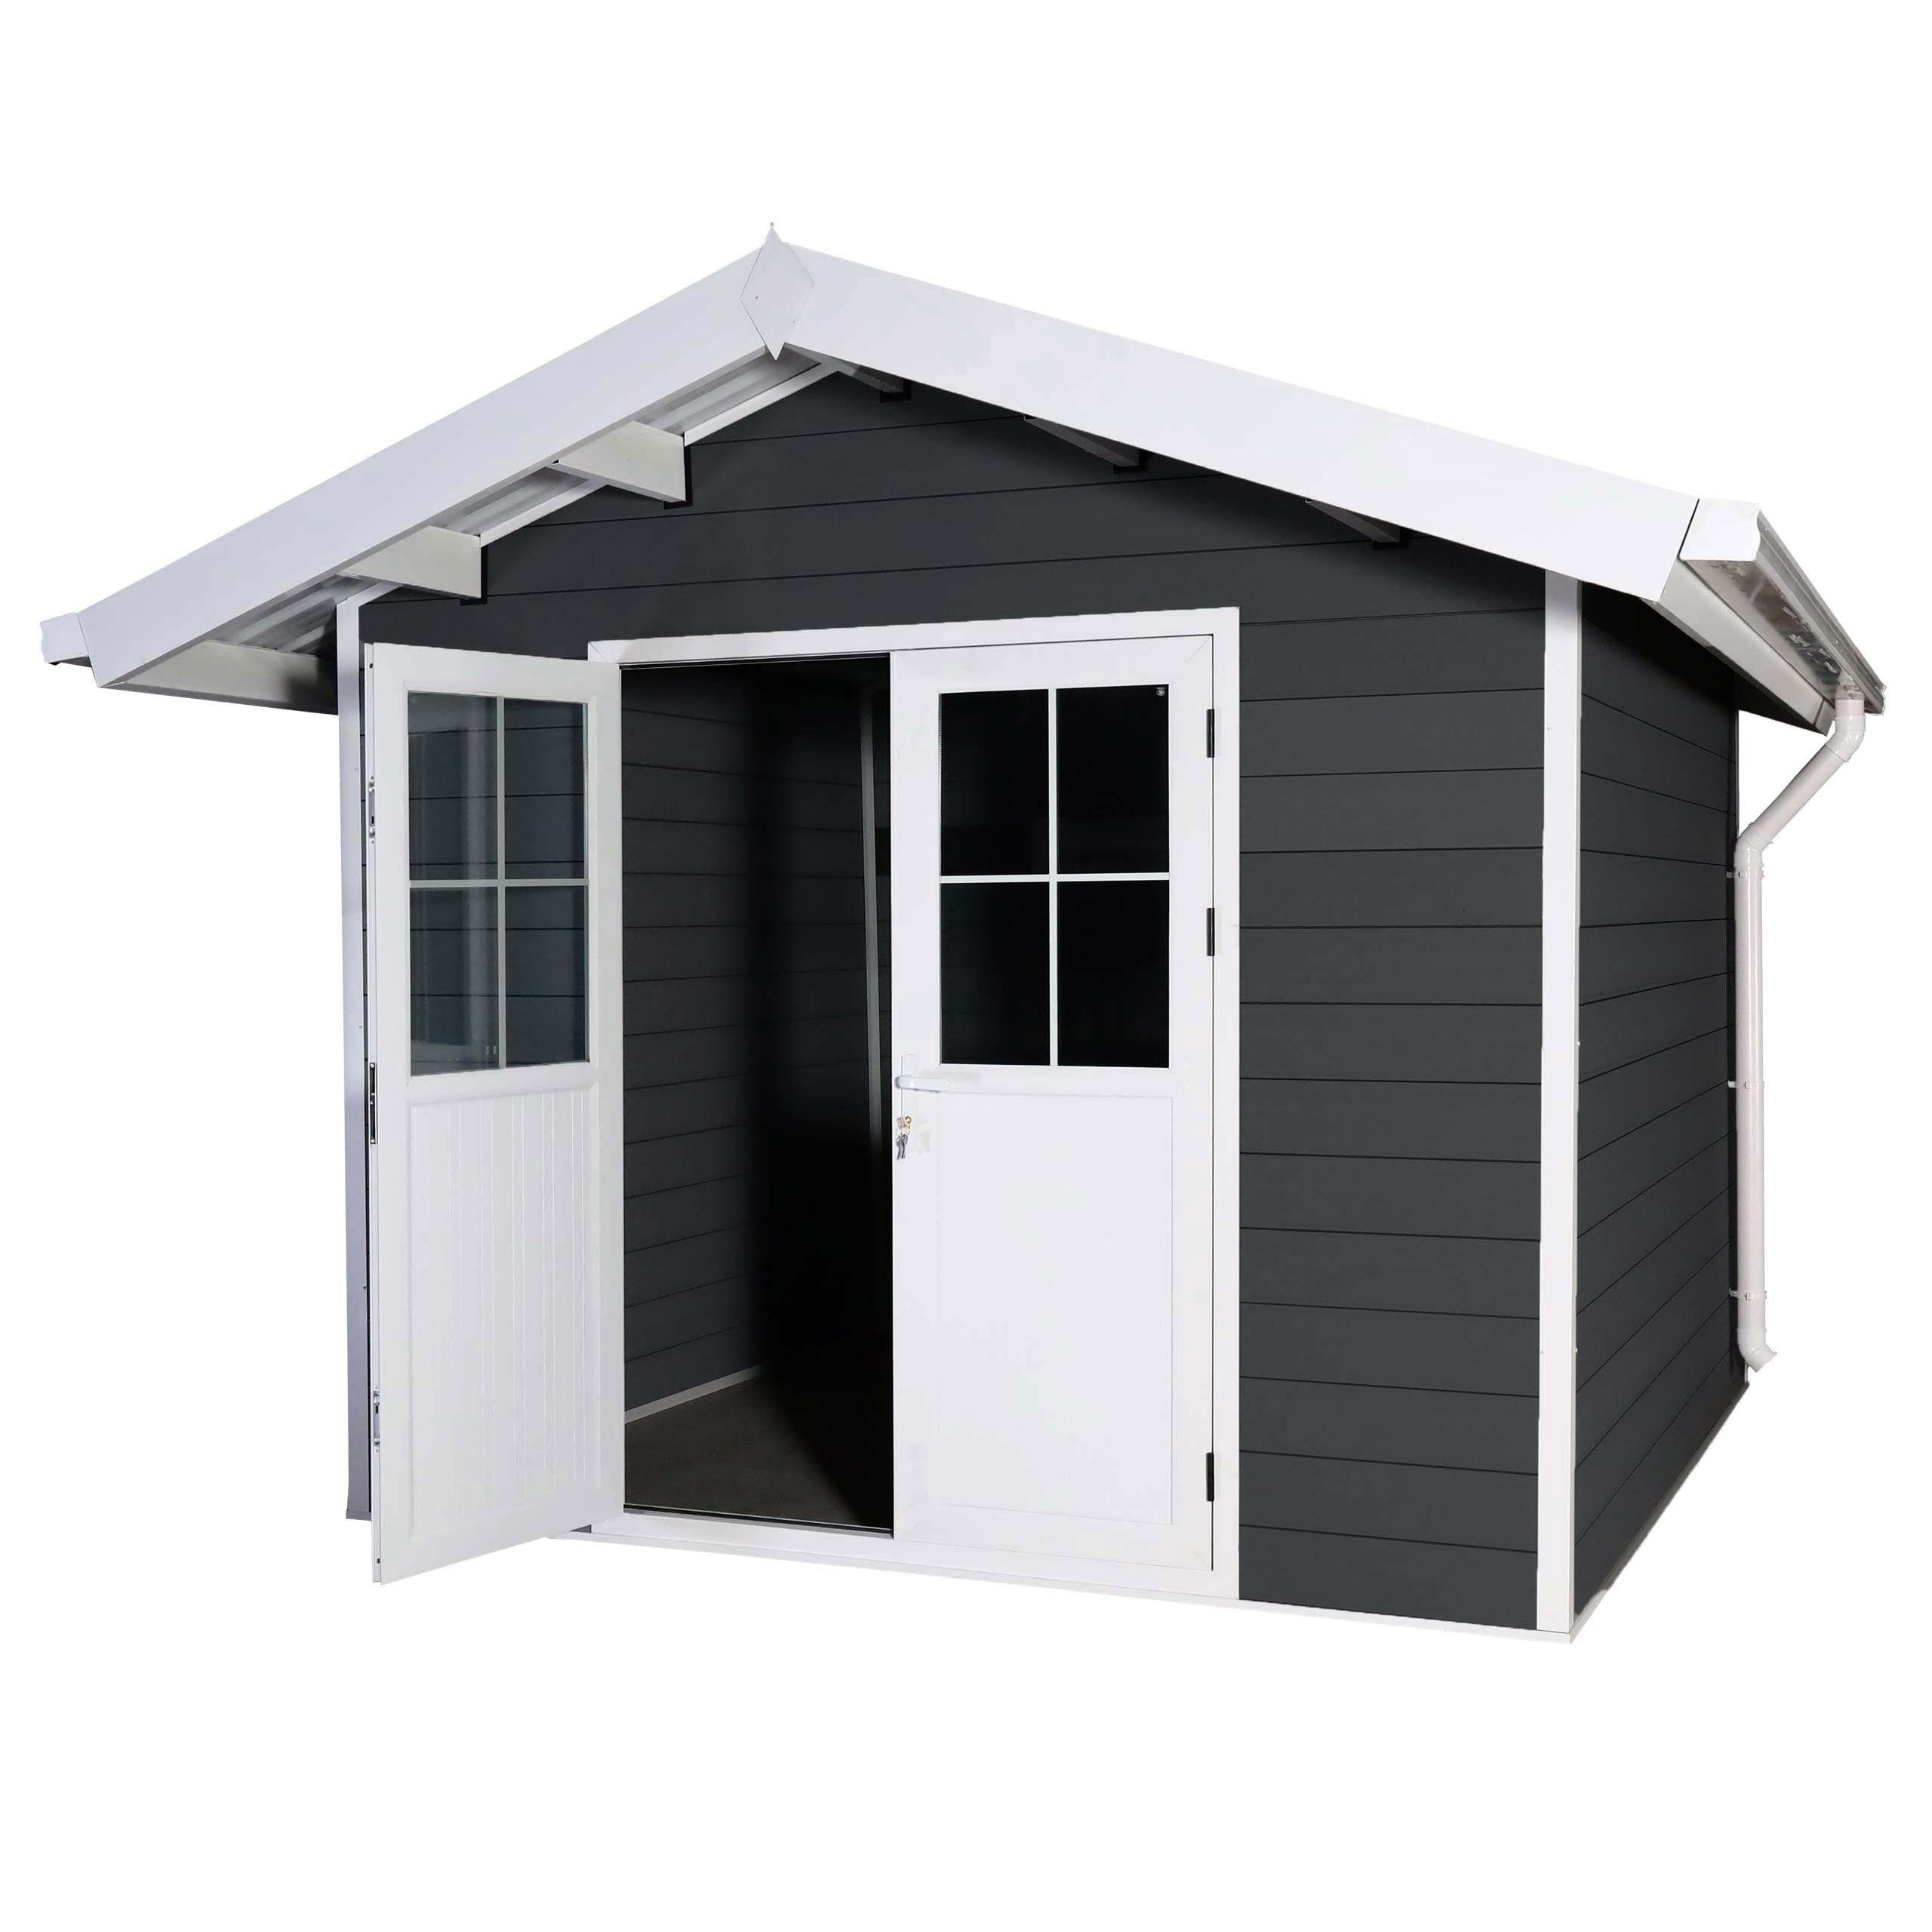 MCW Gartenhaus MCW-J94-G, BxT: 360x366 cm, Bodenplatte nicht enthalten, Maximale Schneelast Dach: 100KG/m² graphit-weiß